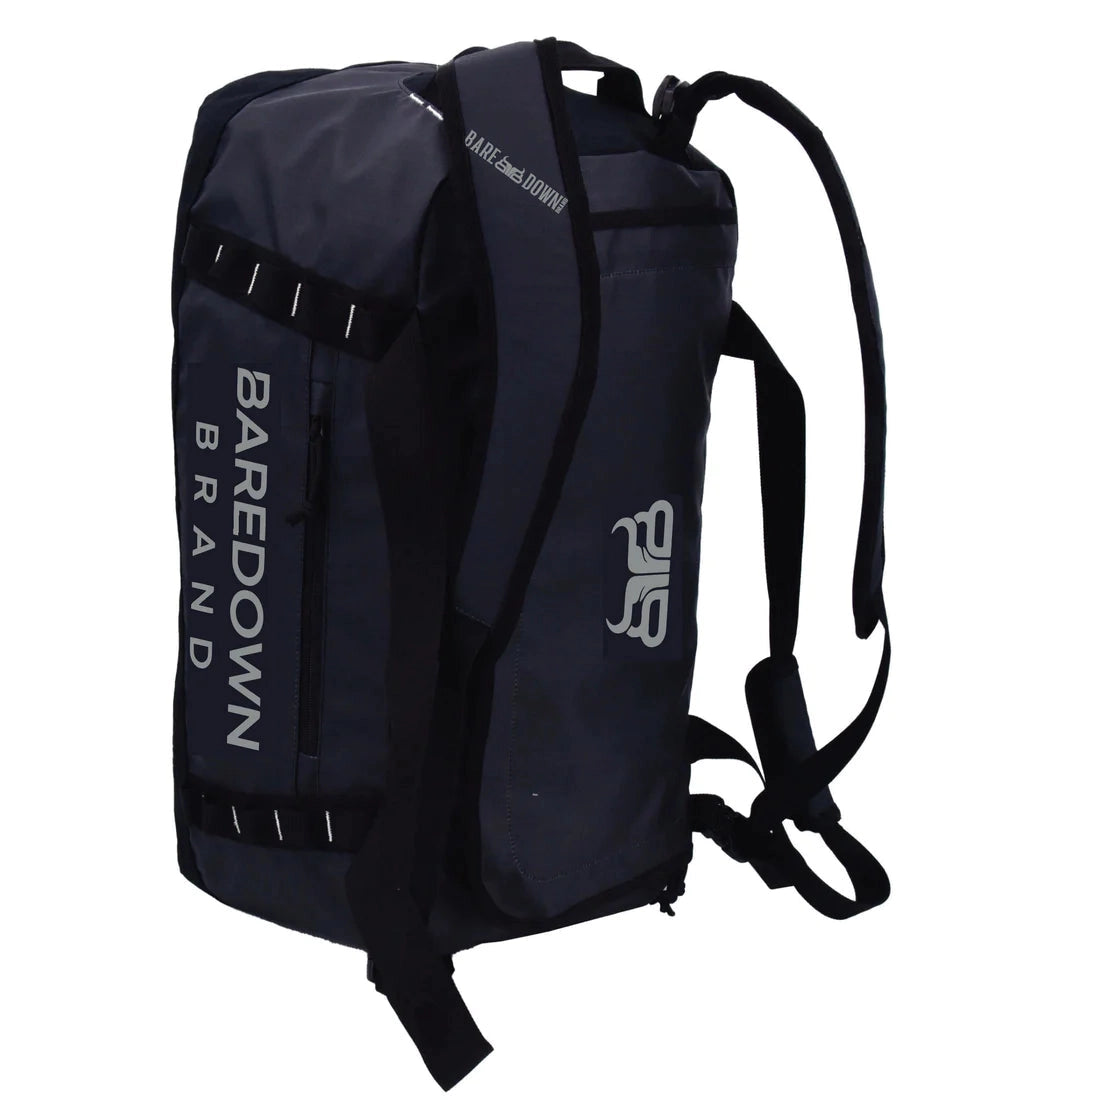 Baredown Duffle Bag/Backpack - Black/Charcoal